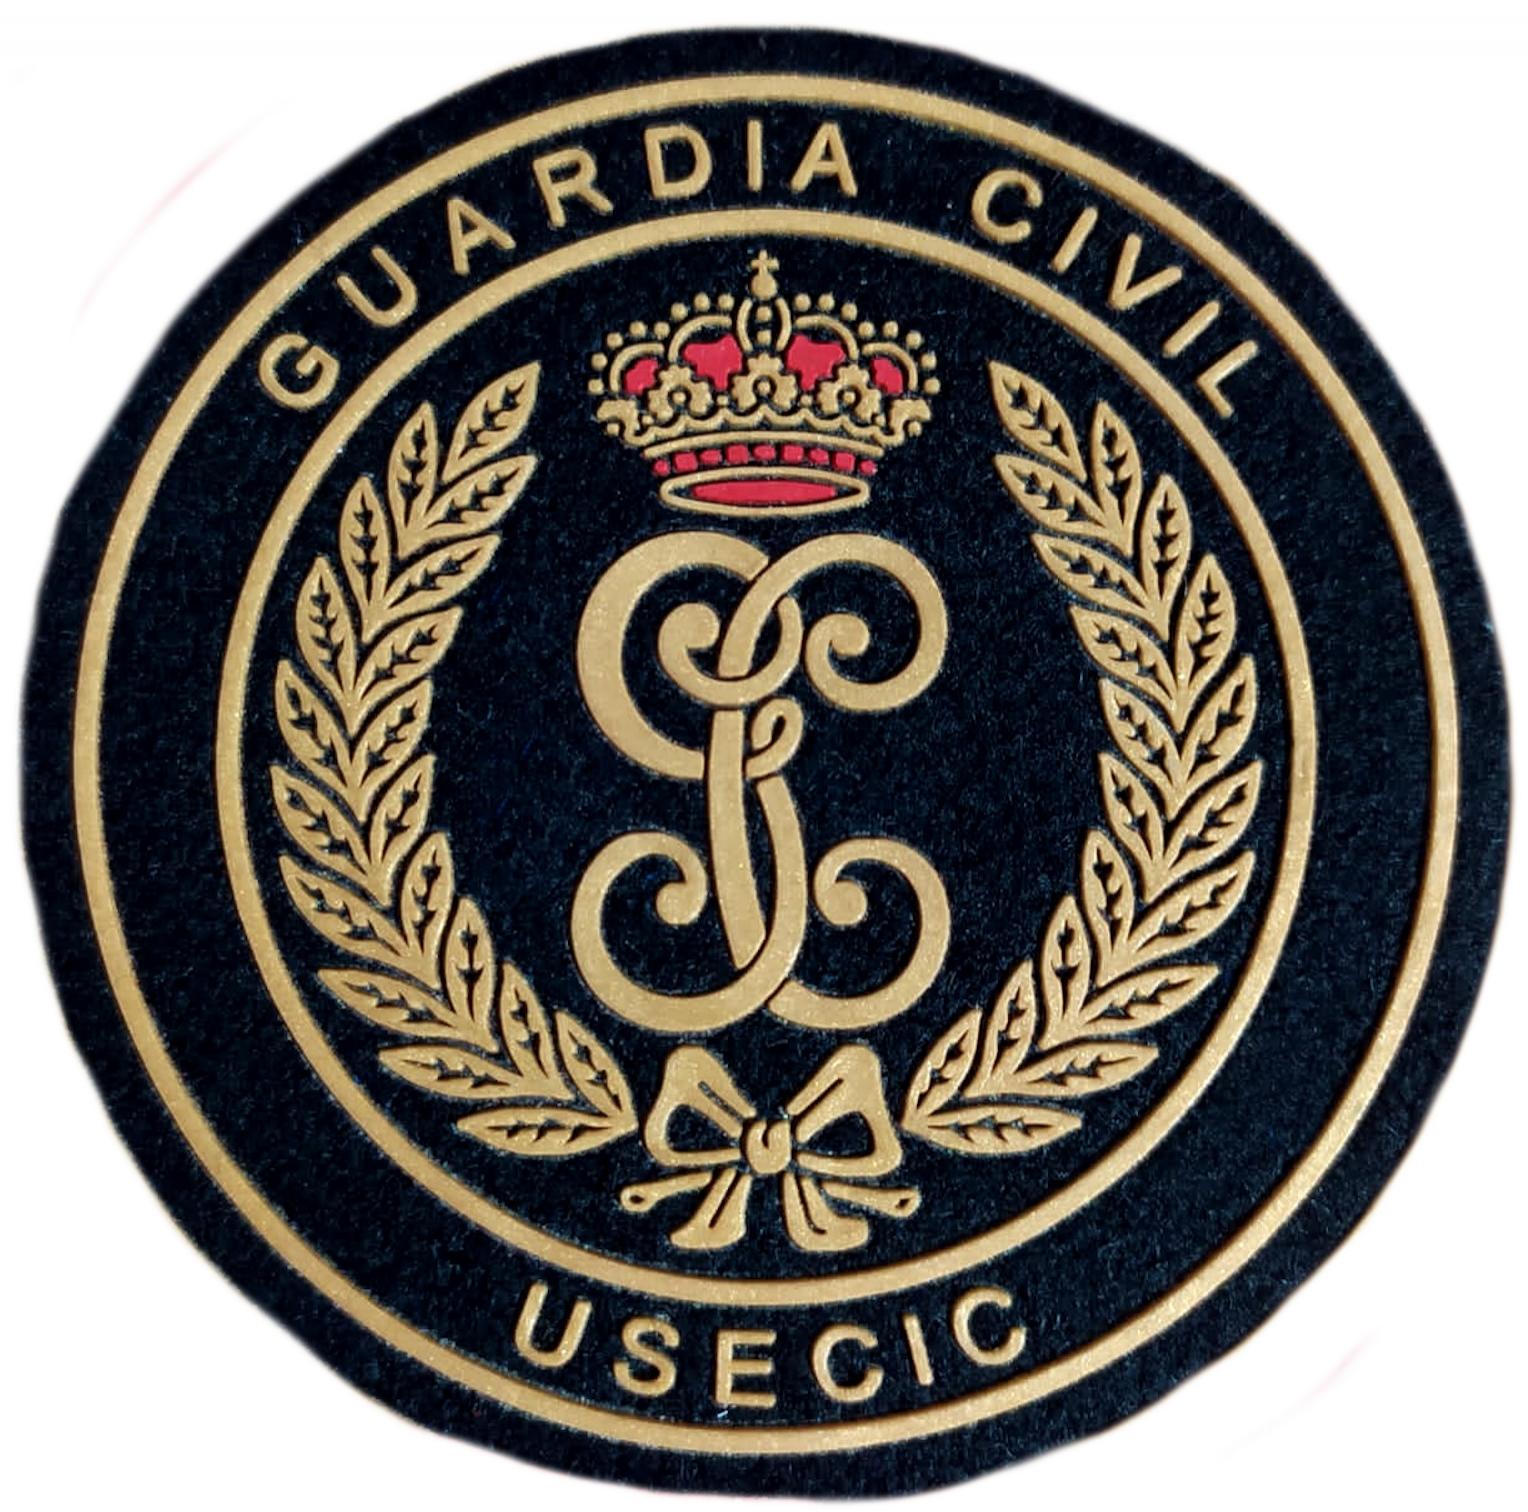 Guardia Civil USECIC negro con lazo dorado parche insignia emblema Gendarmerie